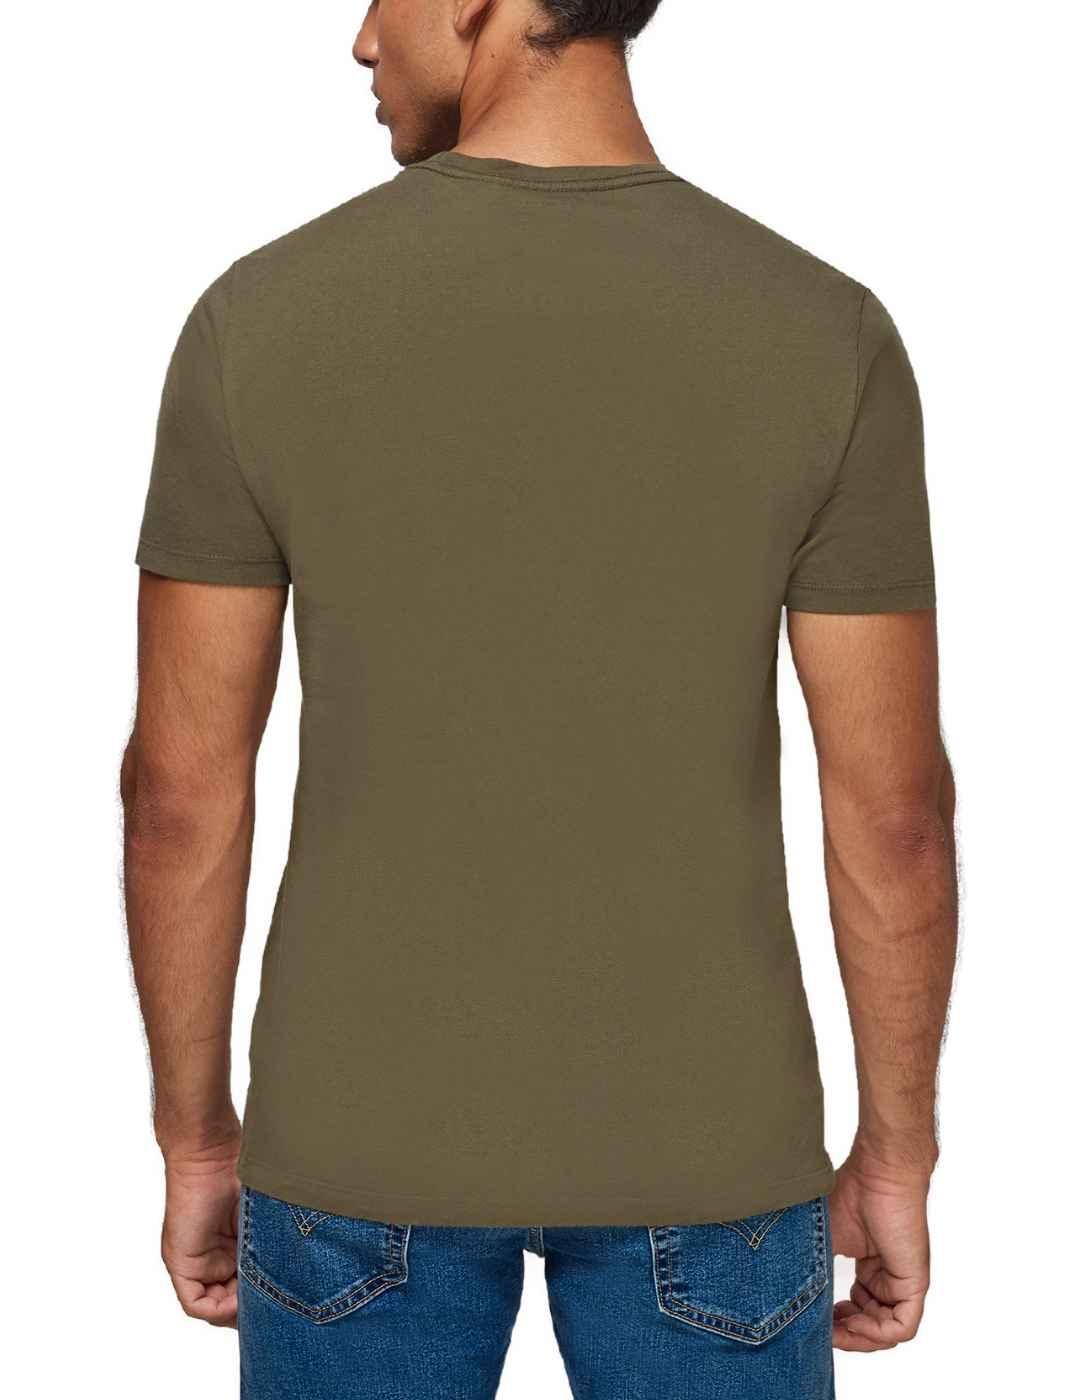 Camiseta Levi's Original verde oliva para hombre